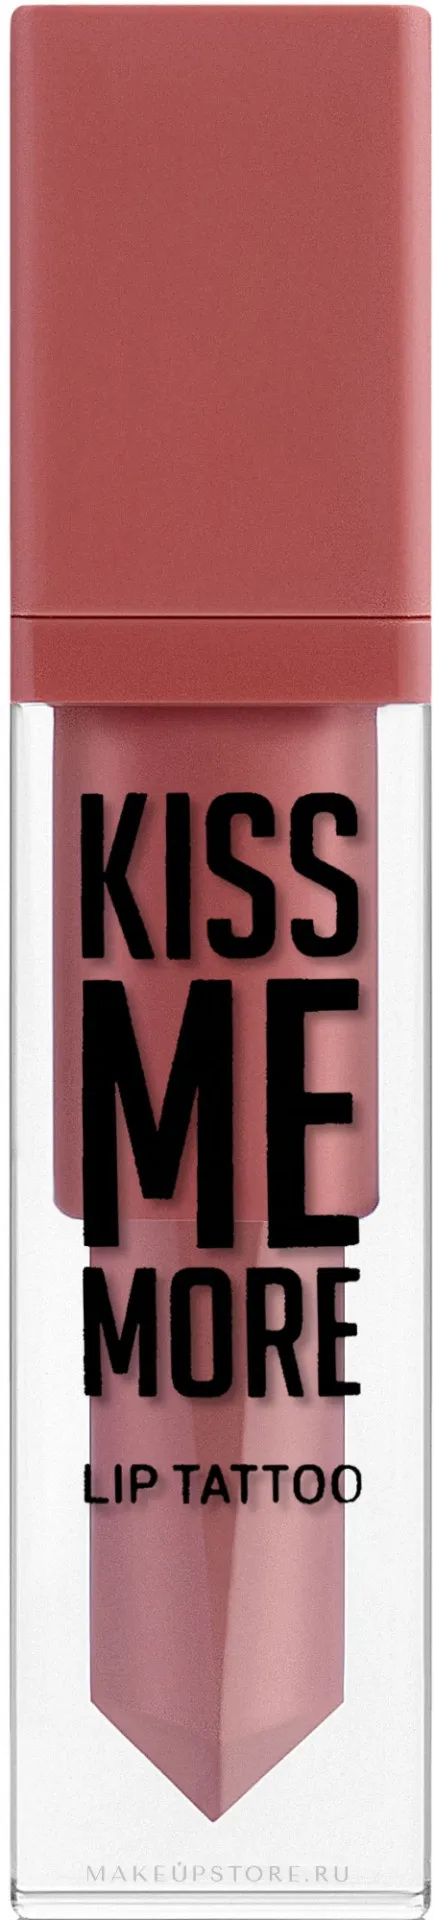 Жидкая матовая помада №01 kiss me more lip tattoo 5543 Flormar#2